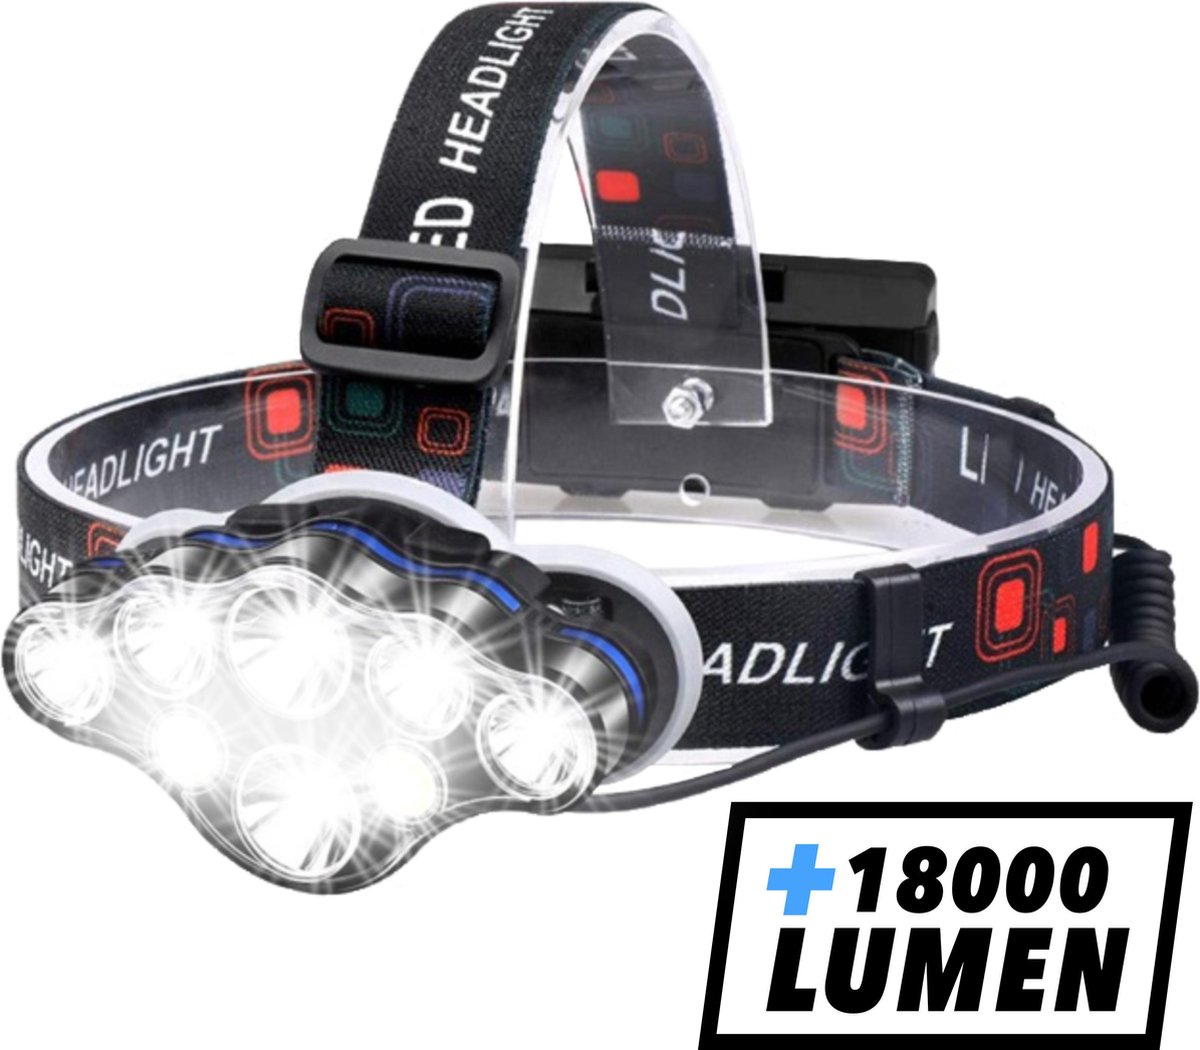 Hoofdlamp - Hoofdlamp LED oplaadbaar - Hoofdlampje - 8 LED-koplampen - 18000 lumen - 500 meter bereik - Verstelbaar - WildTech